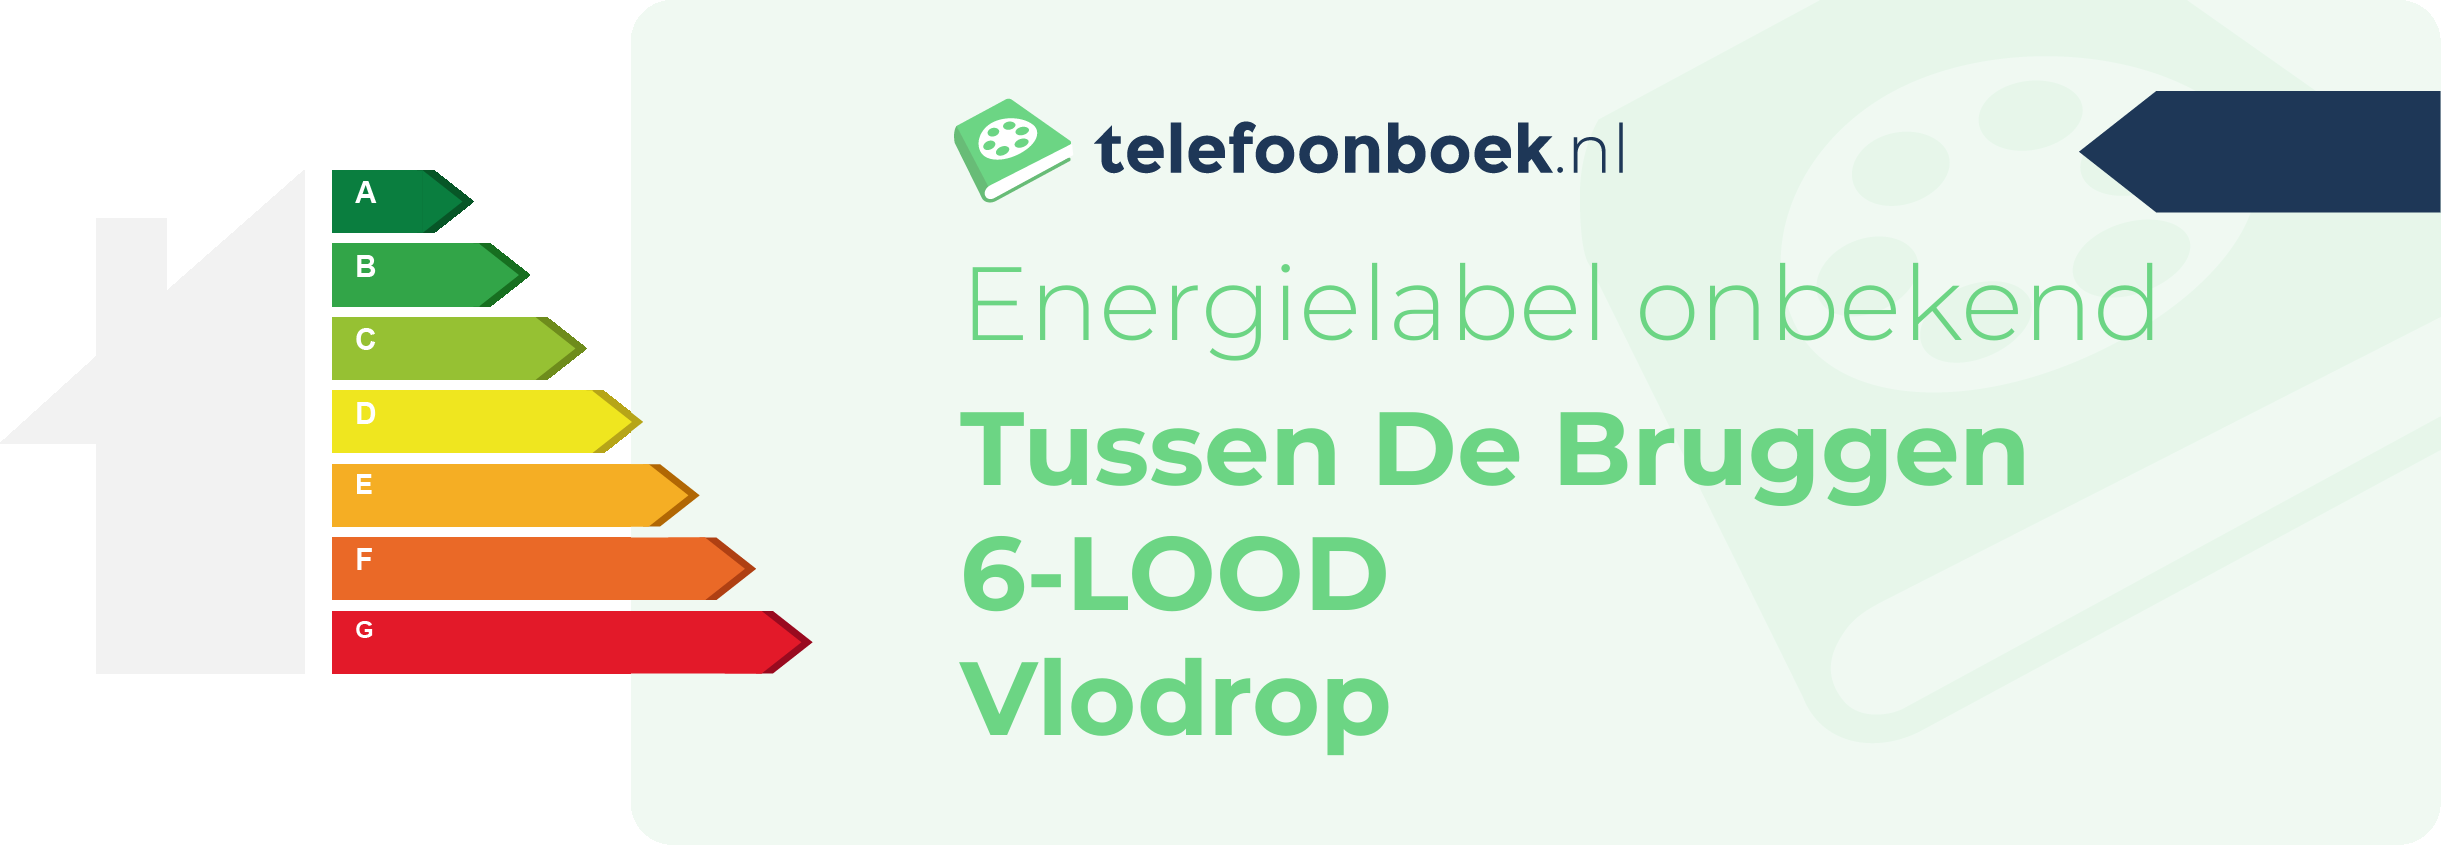 Energielabel Tussen De Bruggen 6-LOOD Vlodrop